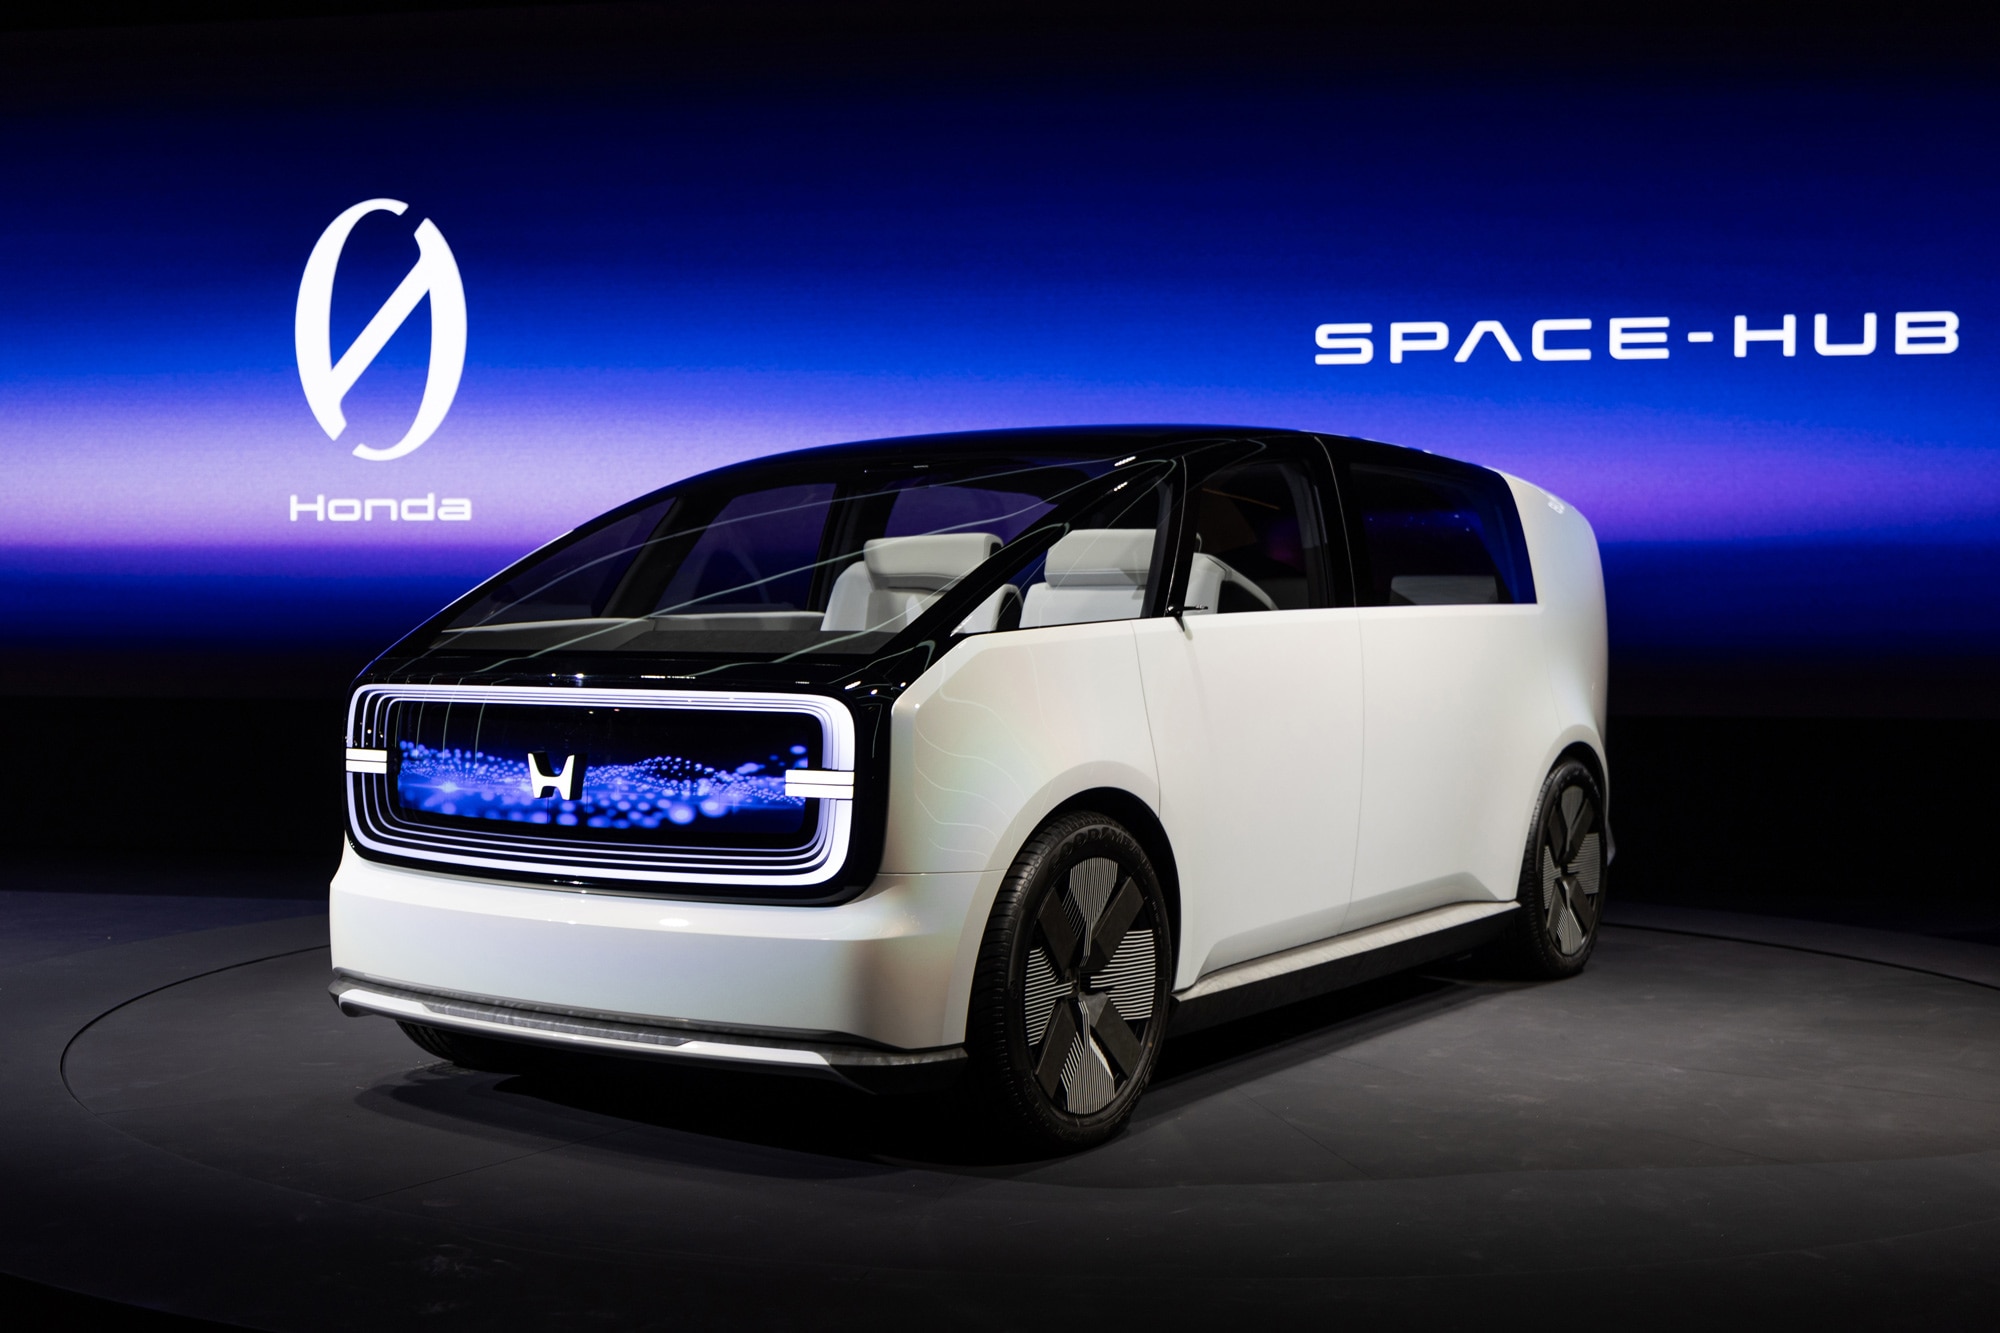 Honda O Space-Hub EV concept